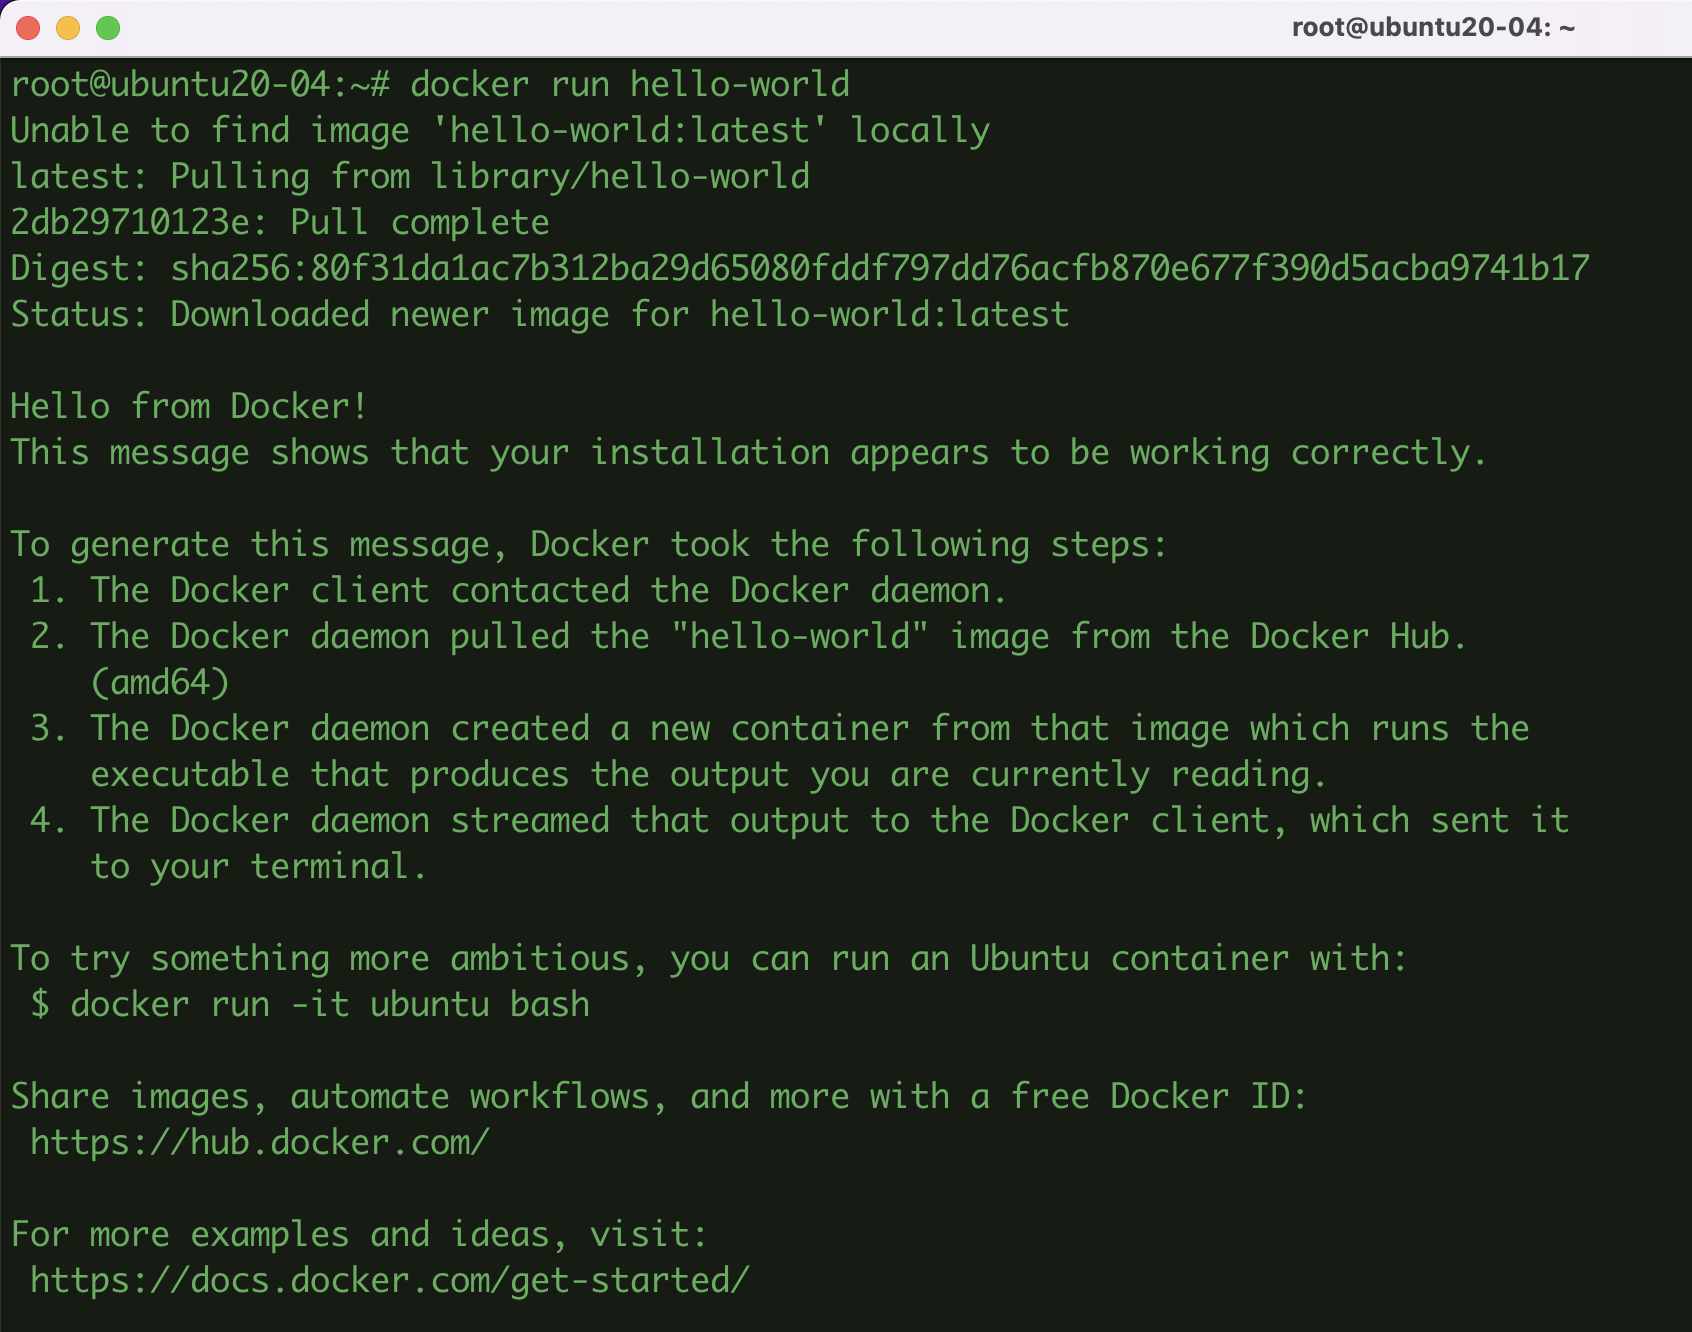 Hướng dẫn cài đặt Docker trên Ubuntu